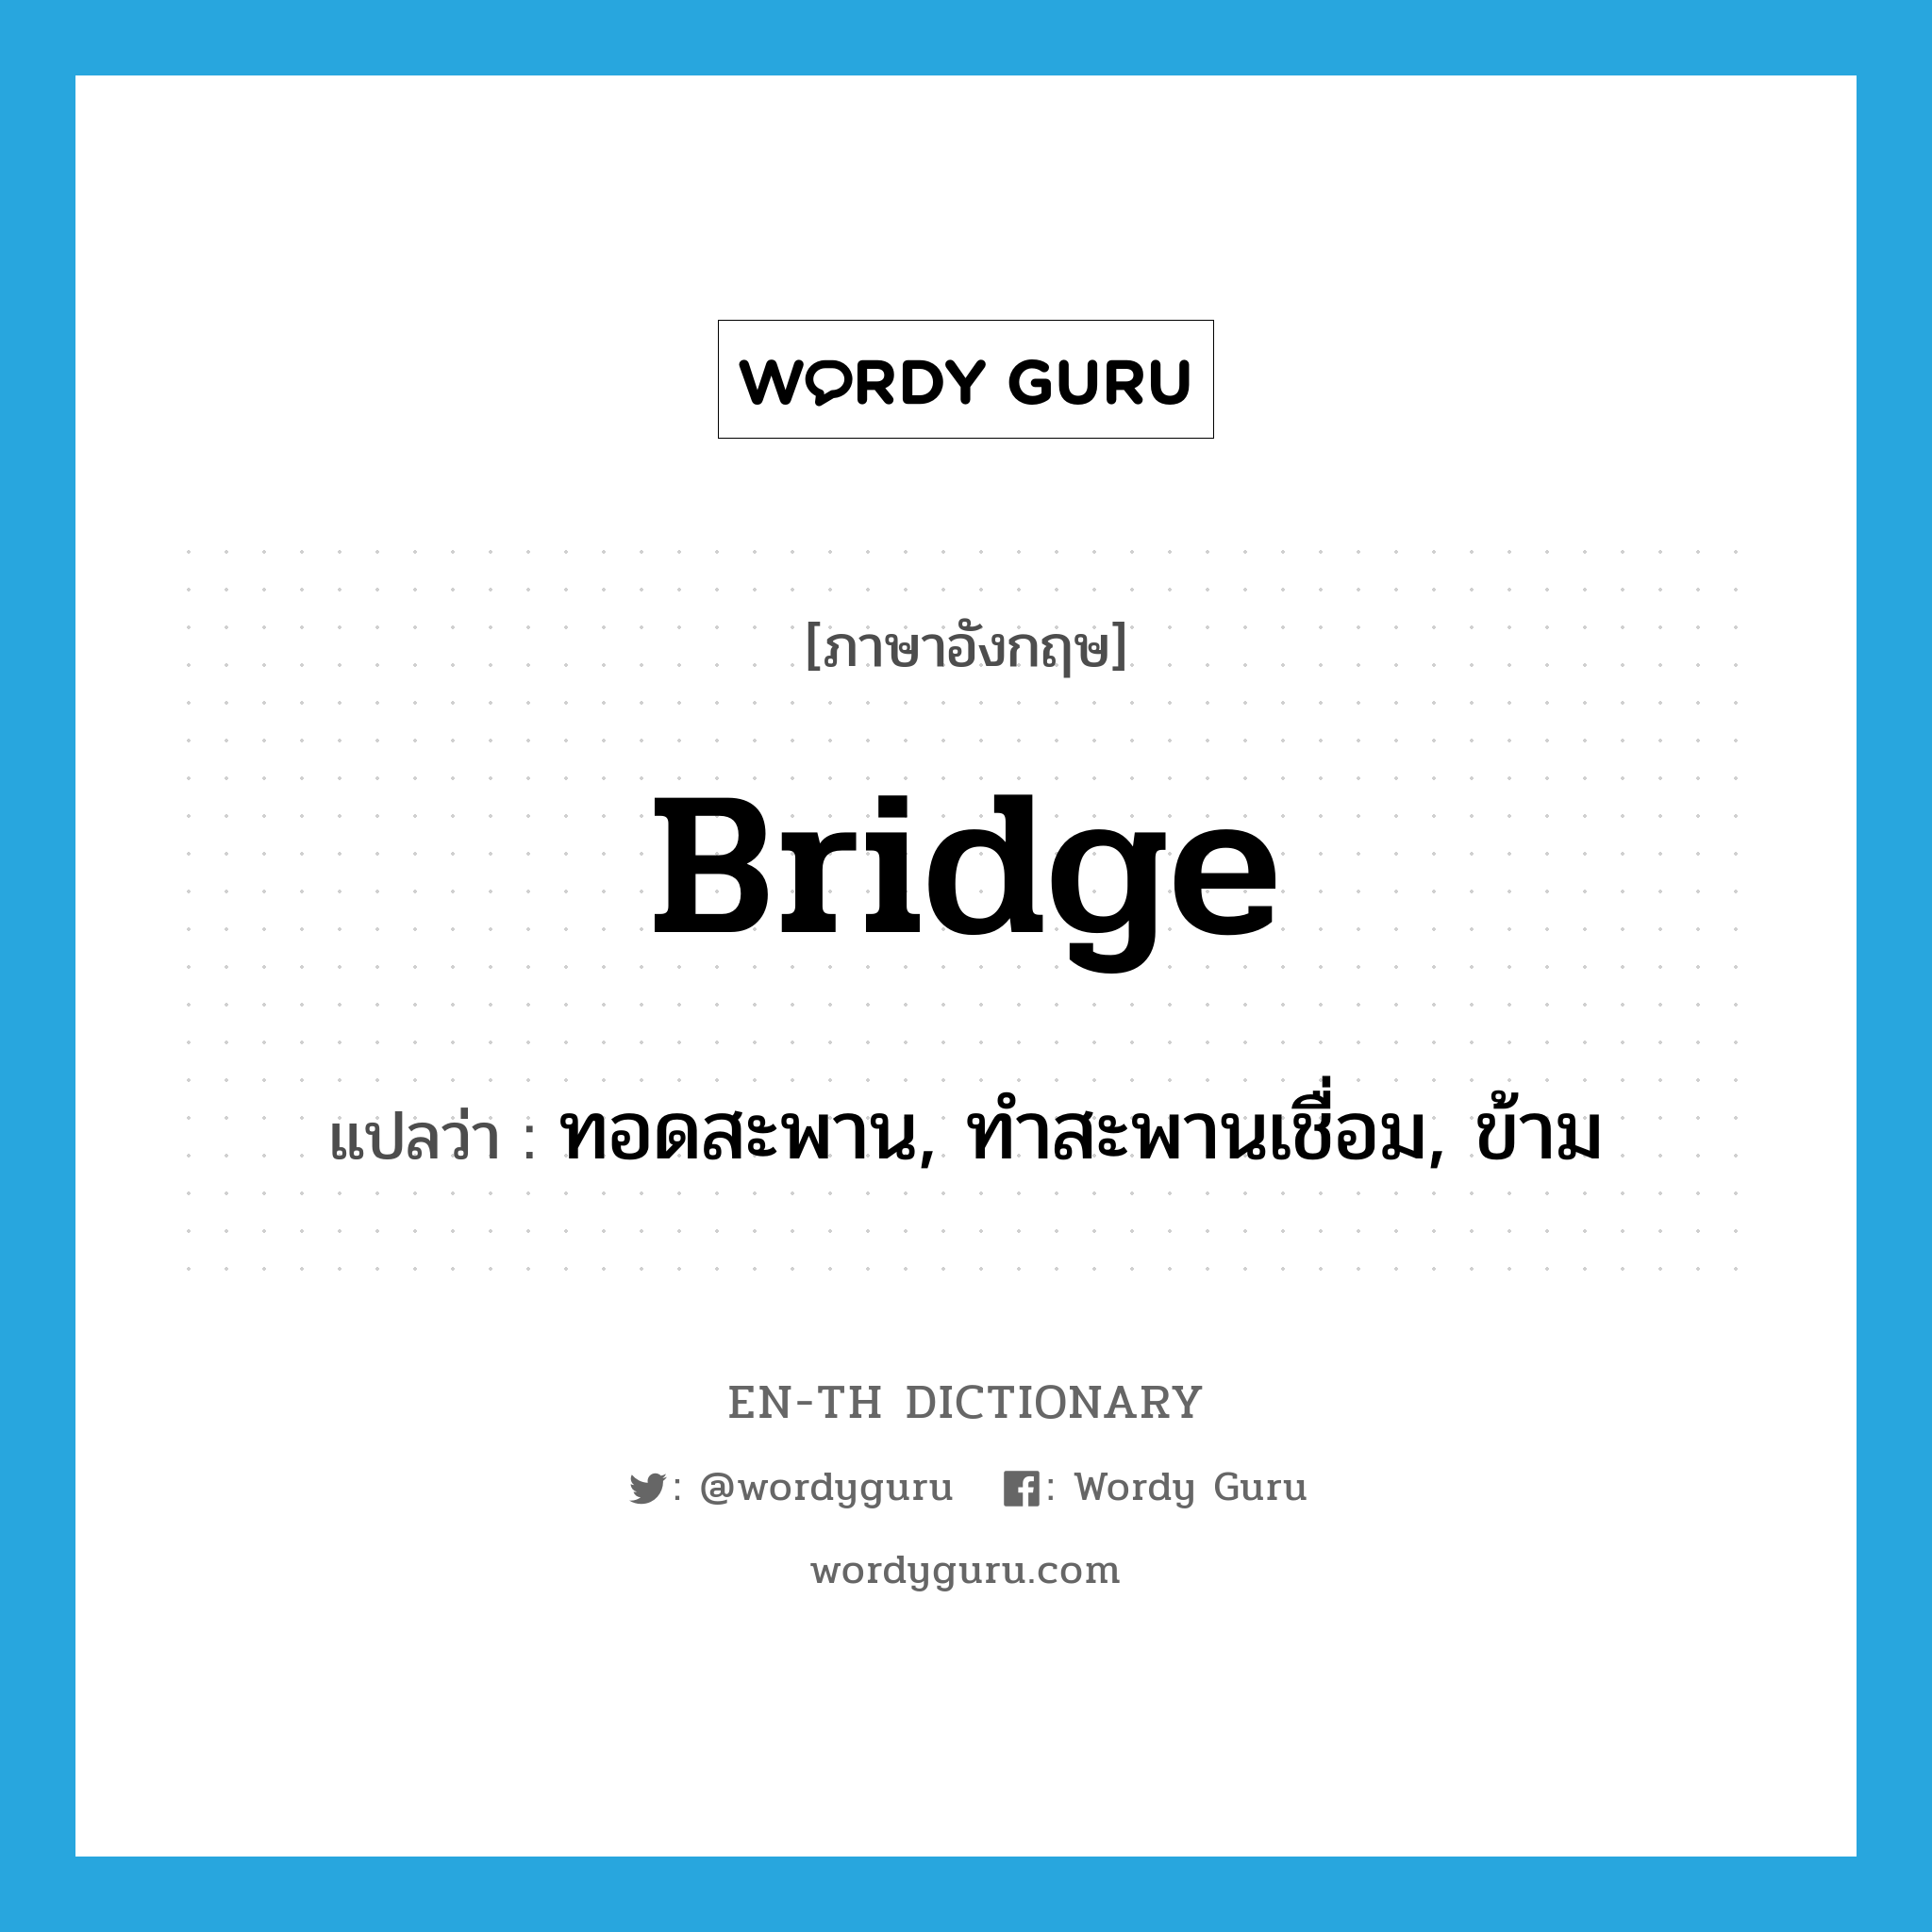 ทอดสะพาน, ทำสะพานเชื่อม, ข้าม ภาษาอังกฤษ?, คำศัพท์ภาษาอังกฤษ ทอดสะพาน, ทำสะพานเชื่อม, ข้าม แปลว่า bridge ประเภท VI หมวด VI